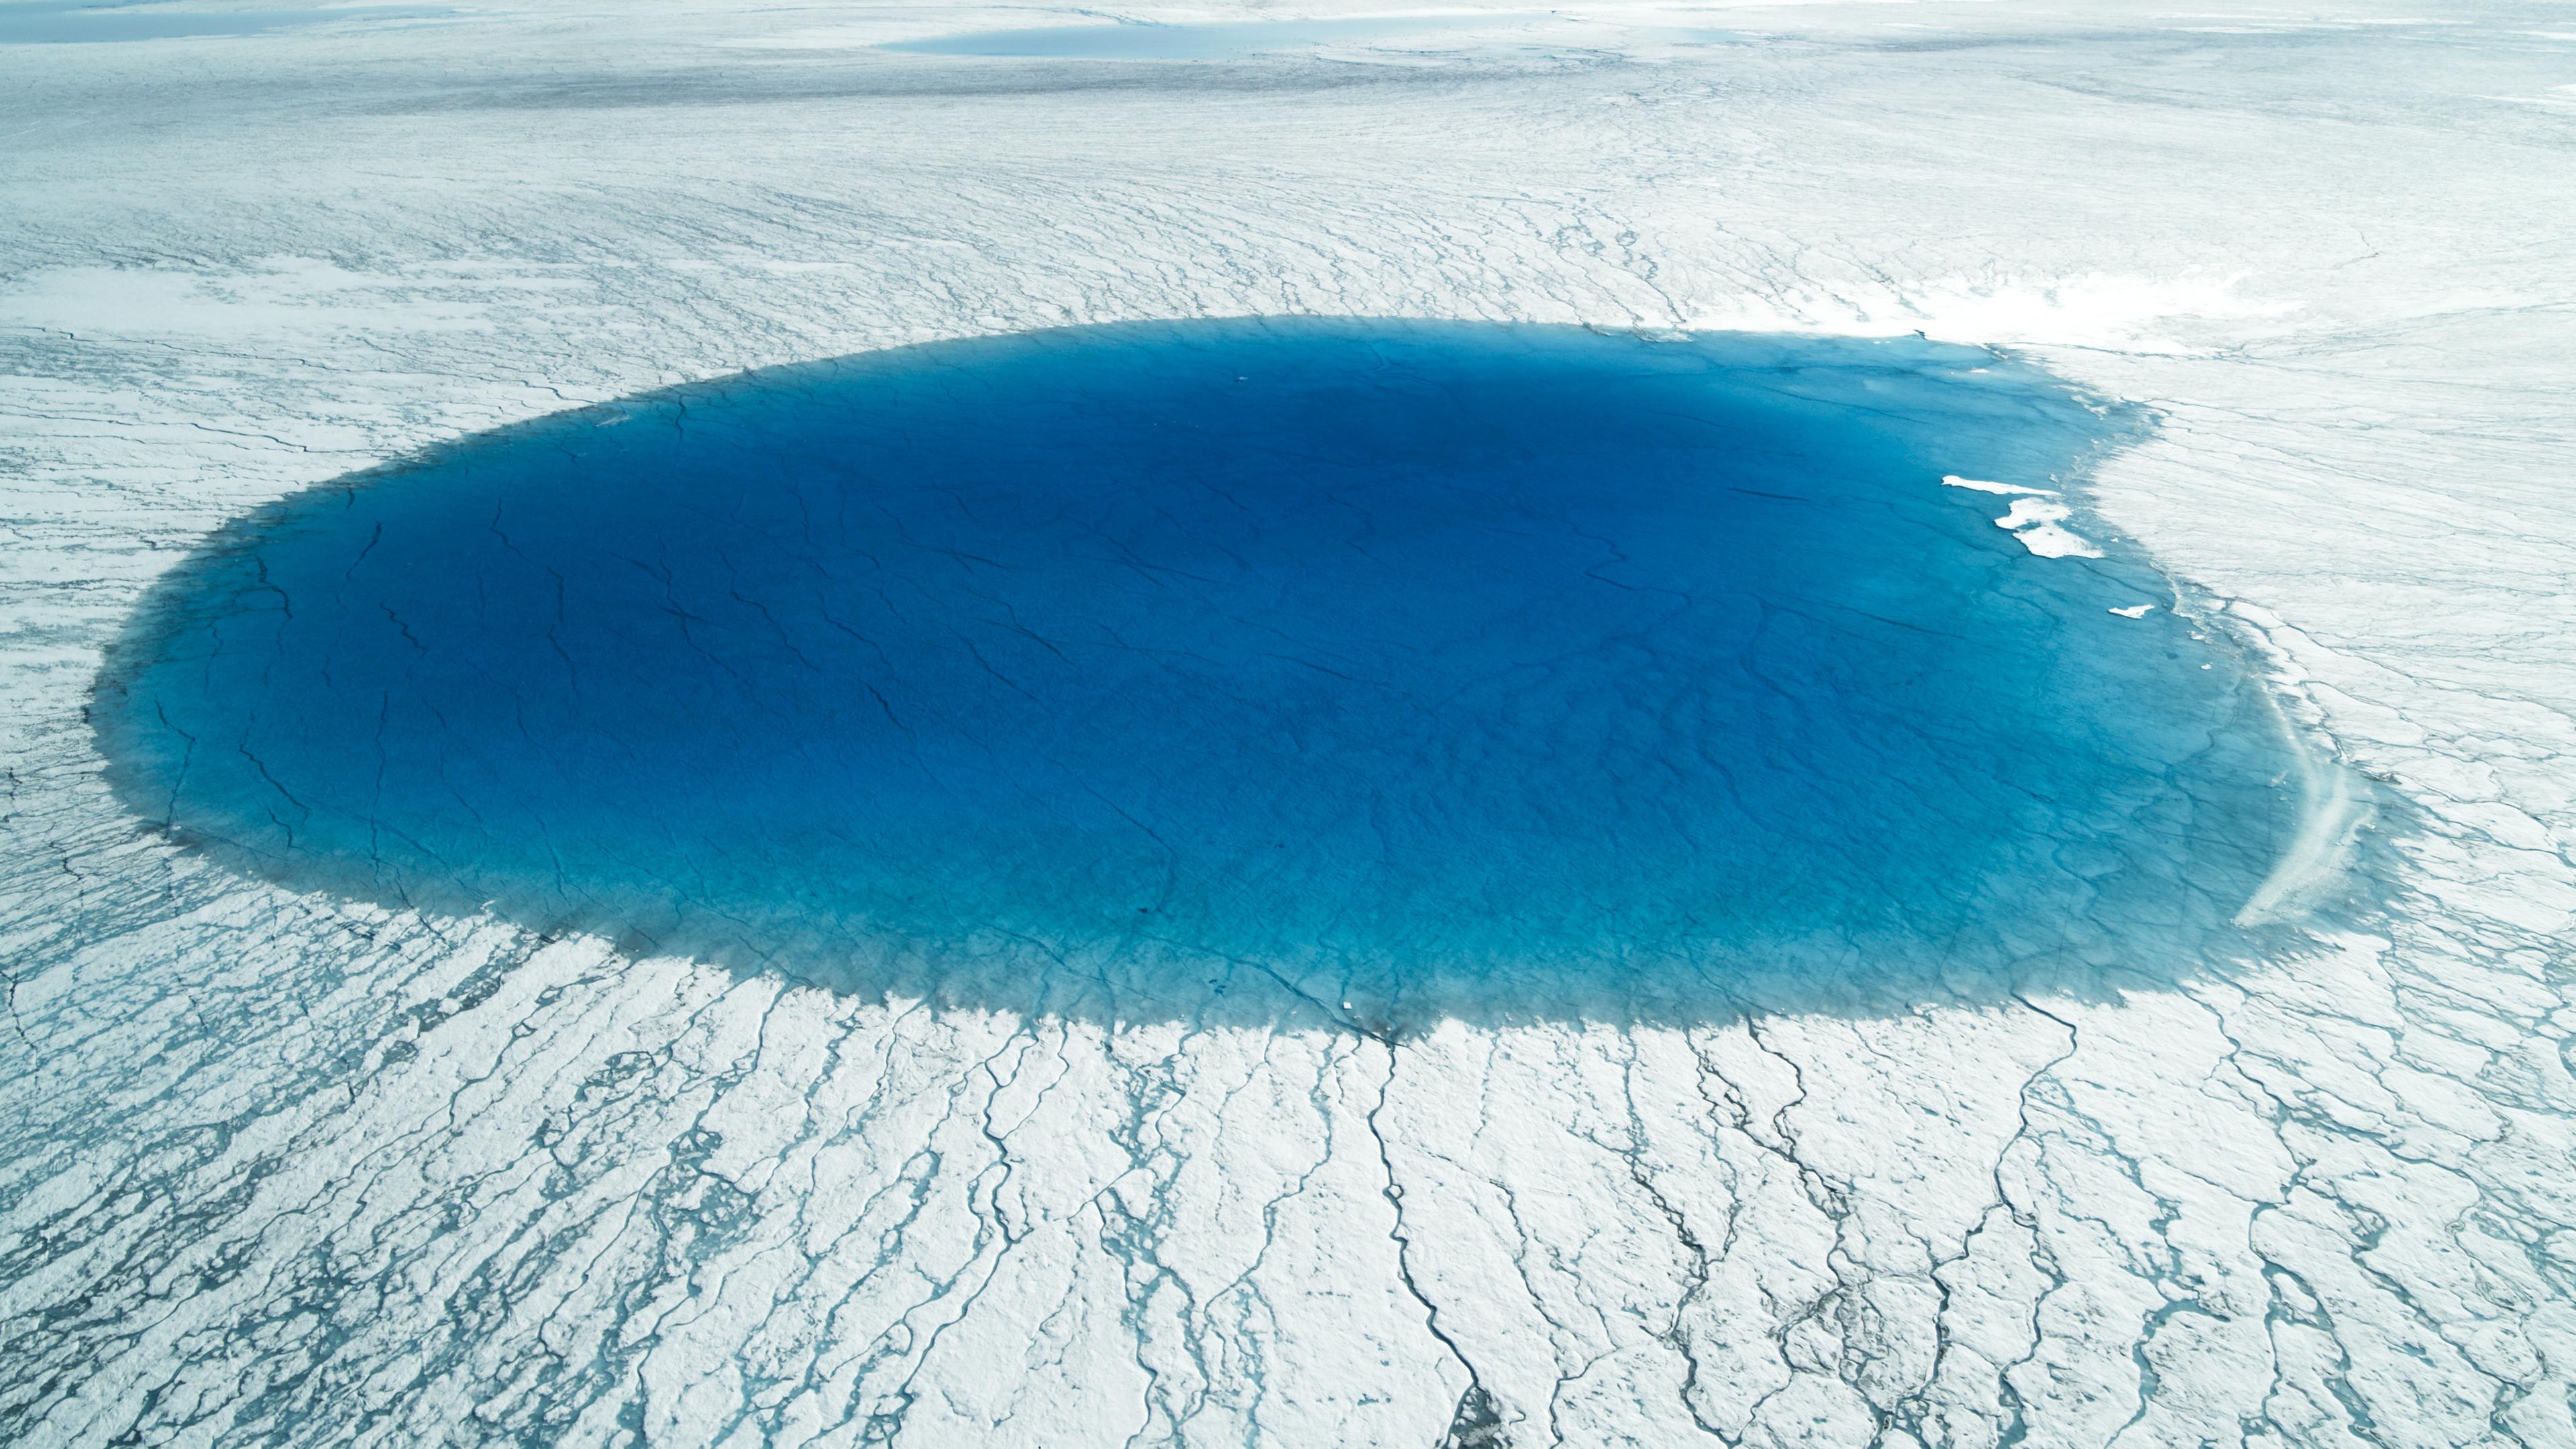 Luftaufnahme eines Schmelzsees inmitten des Eises.